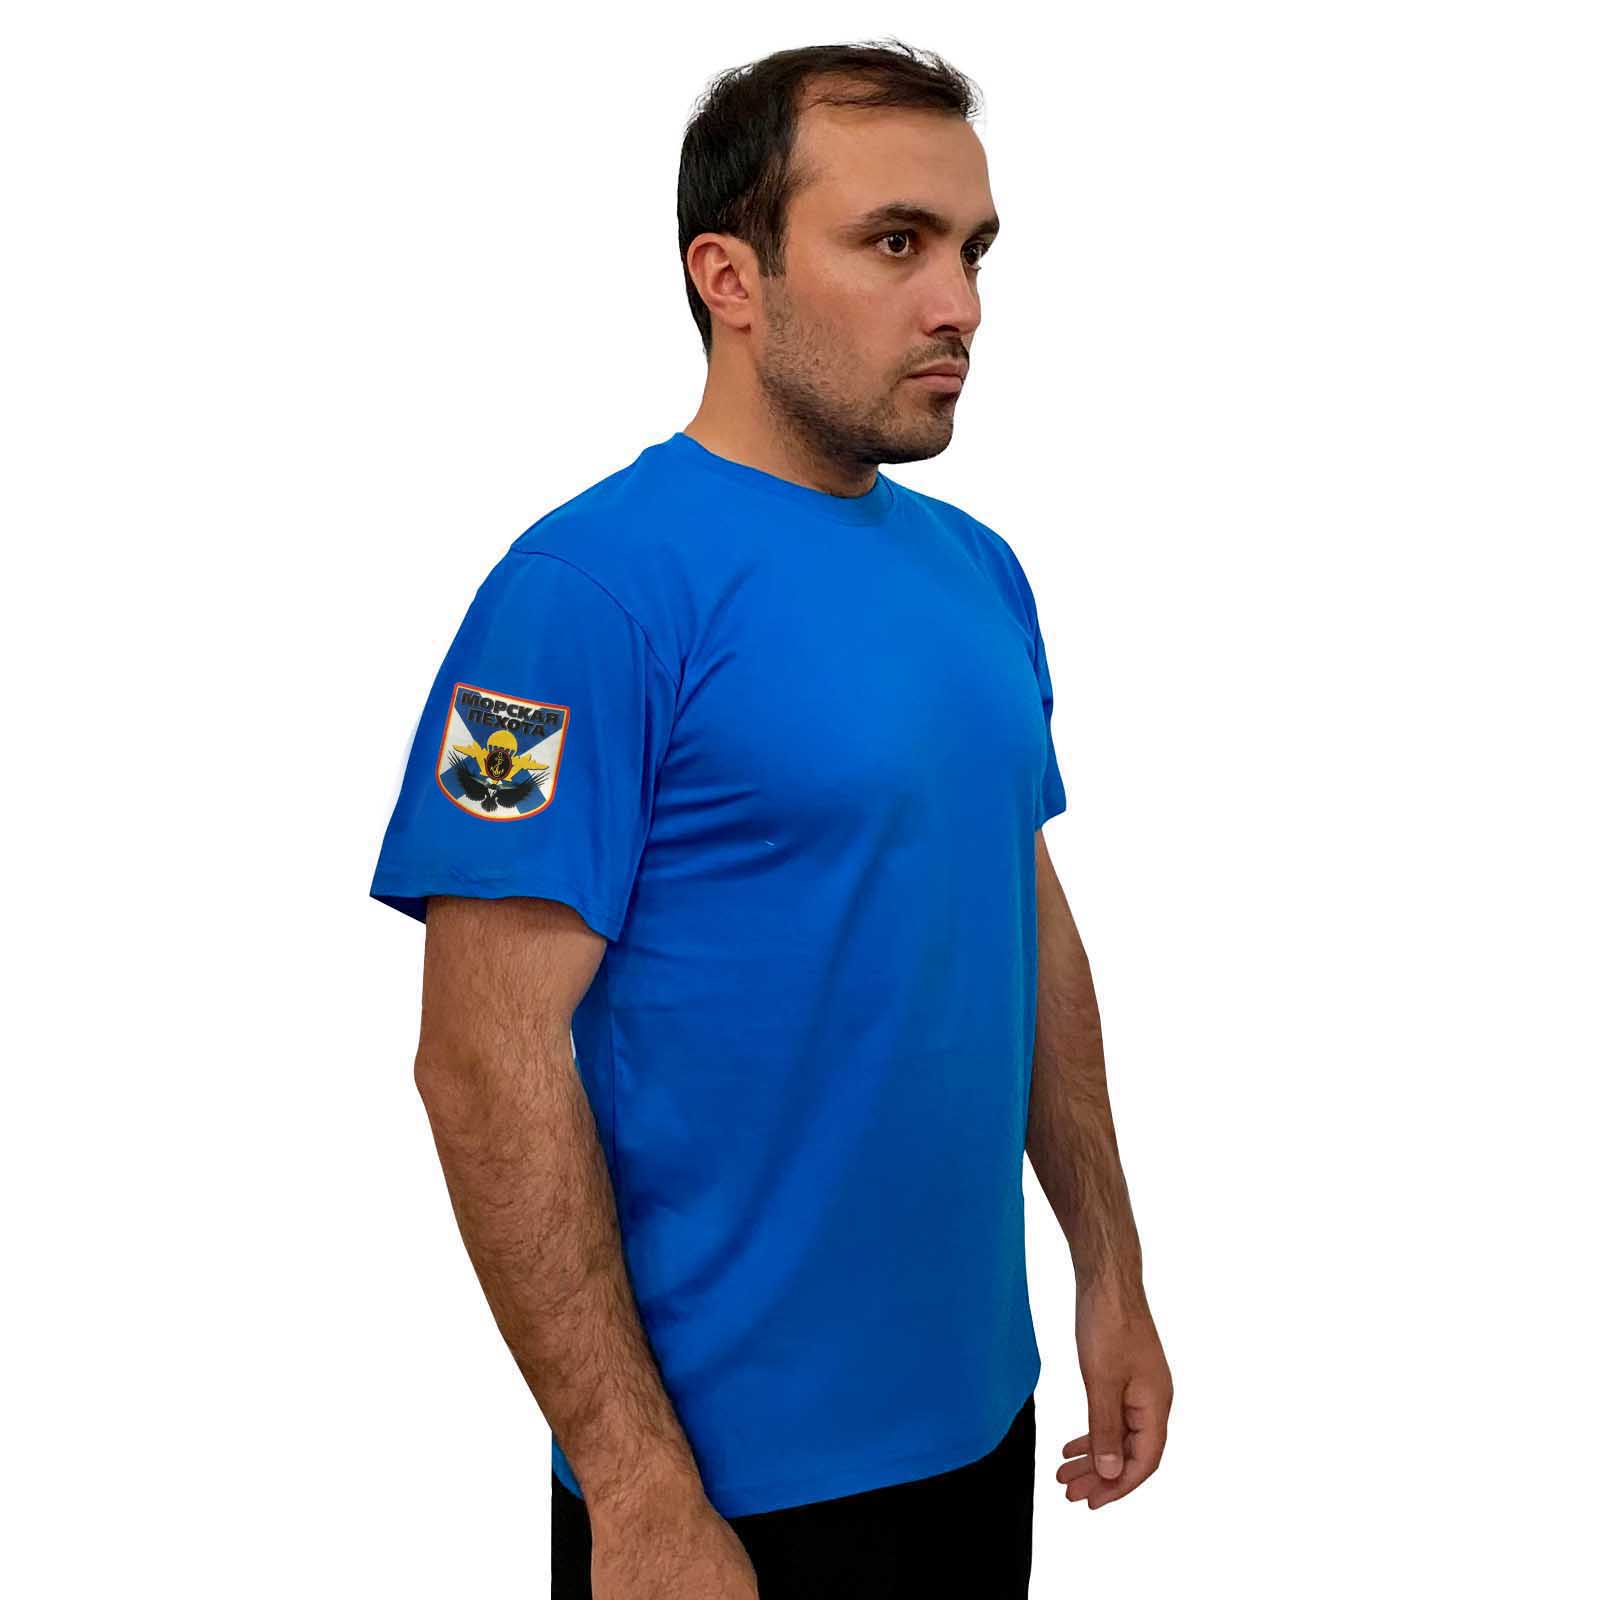 Васильковая футболка с термопринтом "Морская пехота" на рукаве